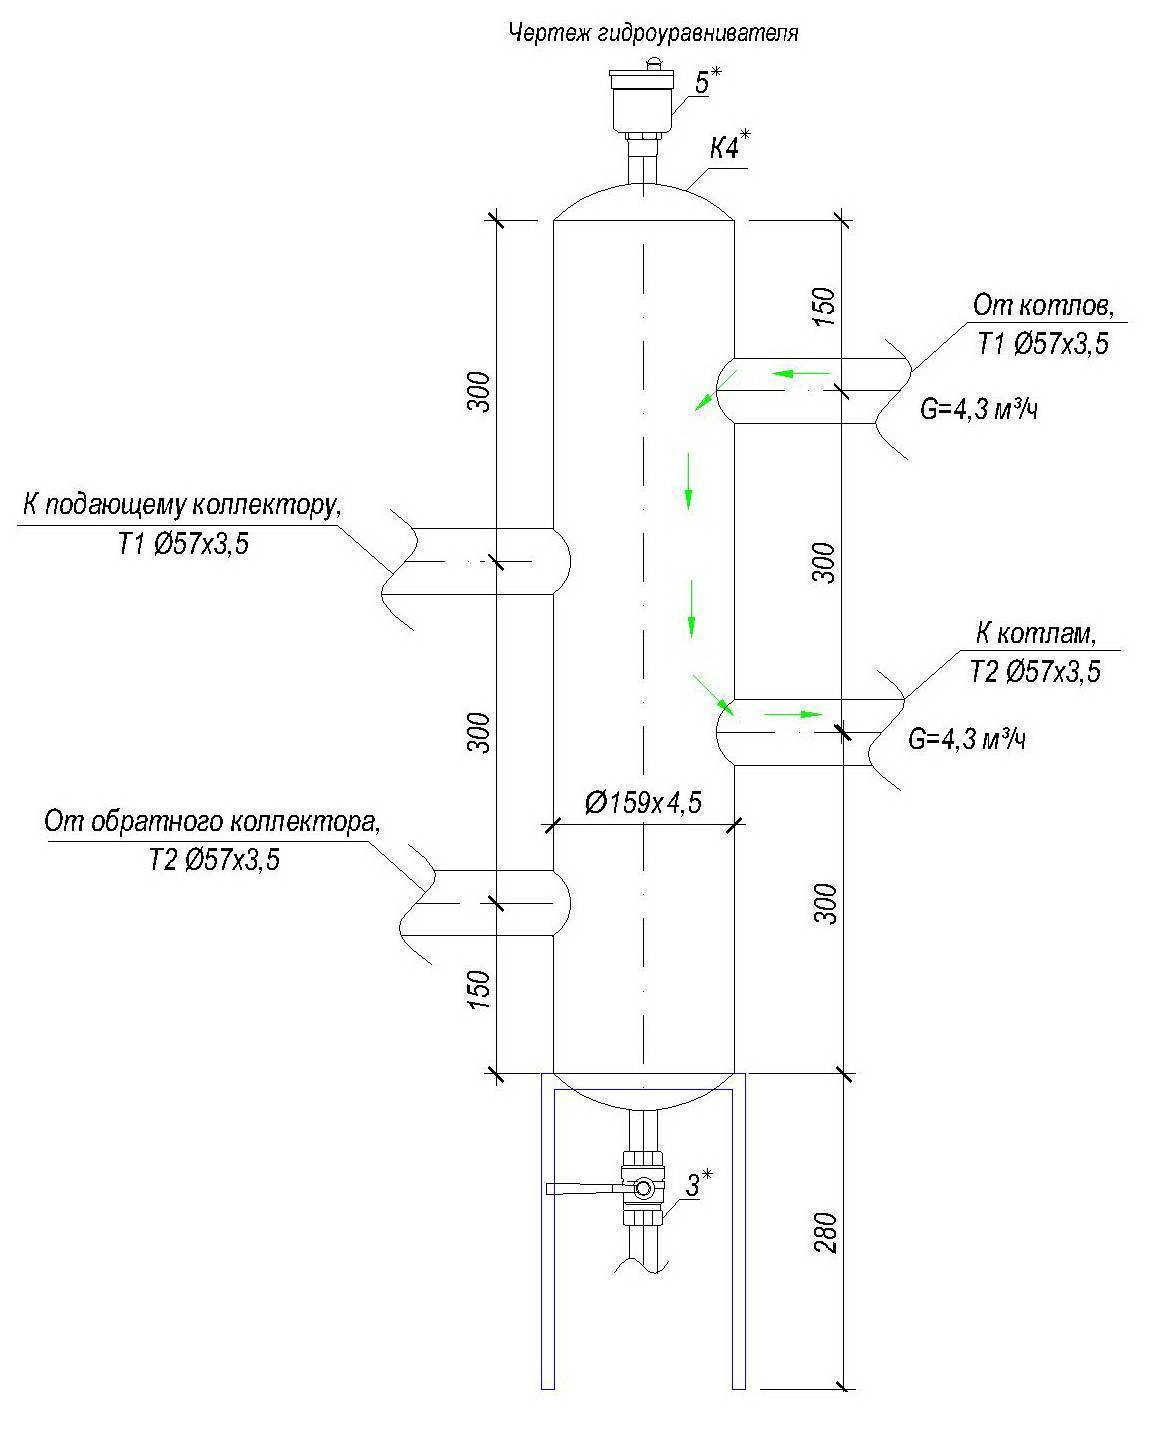 Гидрострелка для отопления: конструкция и алгоритм работы гидравлического распределителя